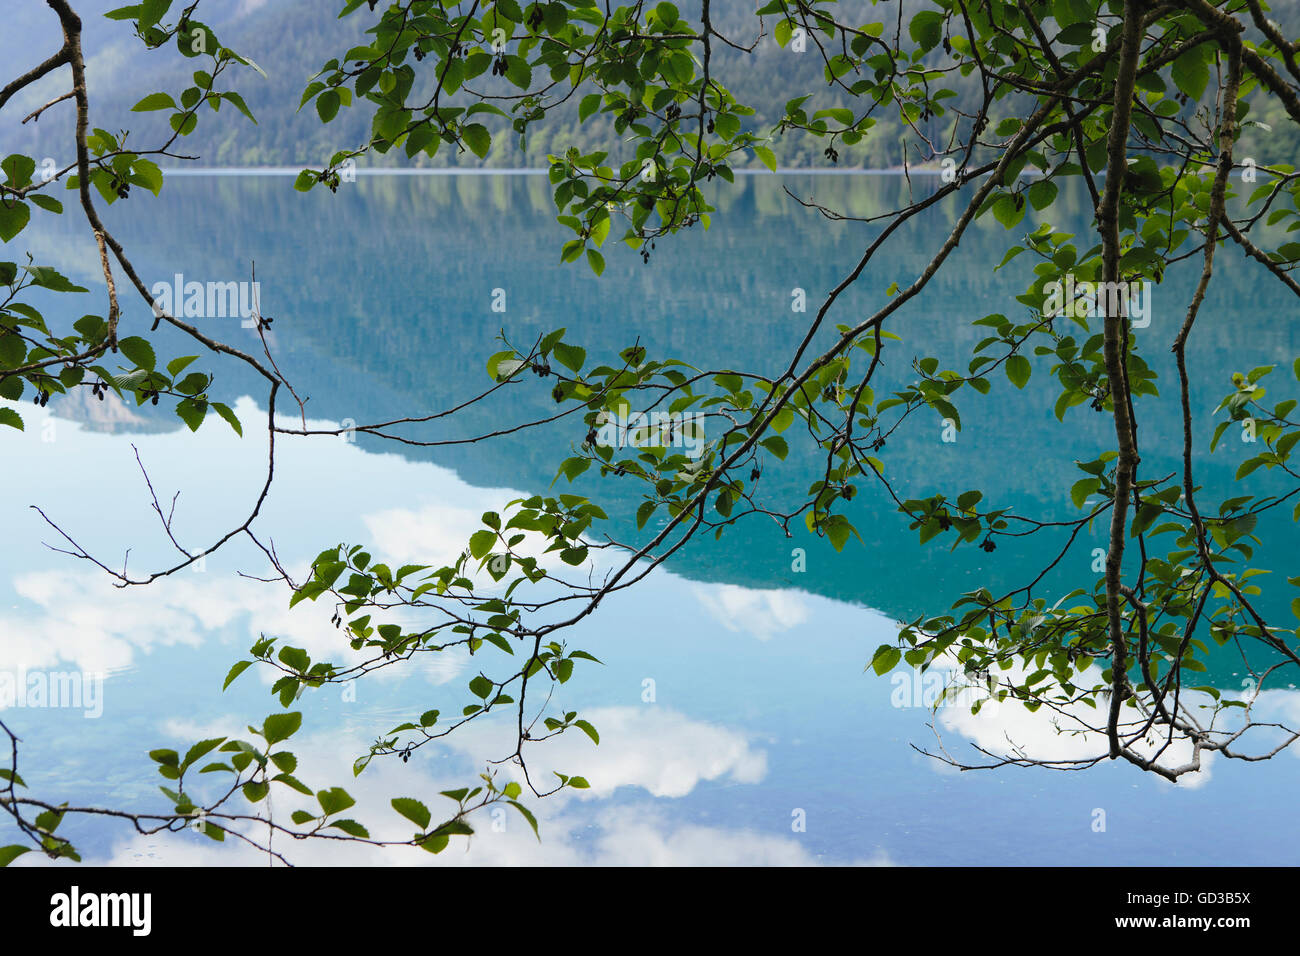 Riflessioni a specchio, il cielo e le nuvole si riflette nella superficie dell'acqua del lago Crescent. Foto Stock